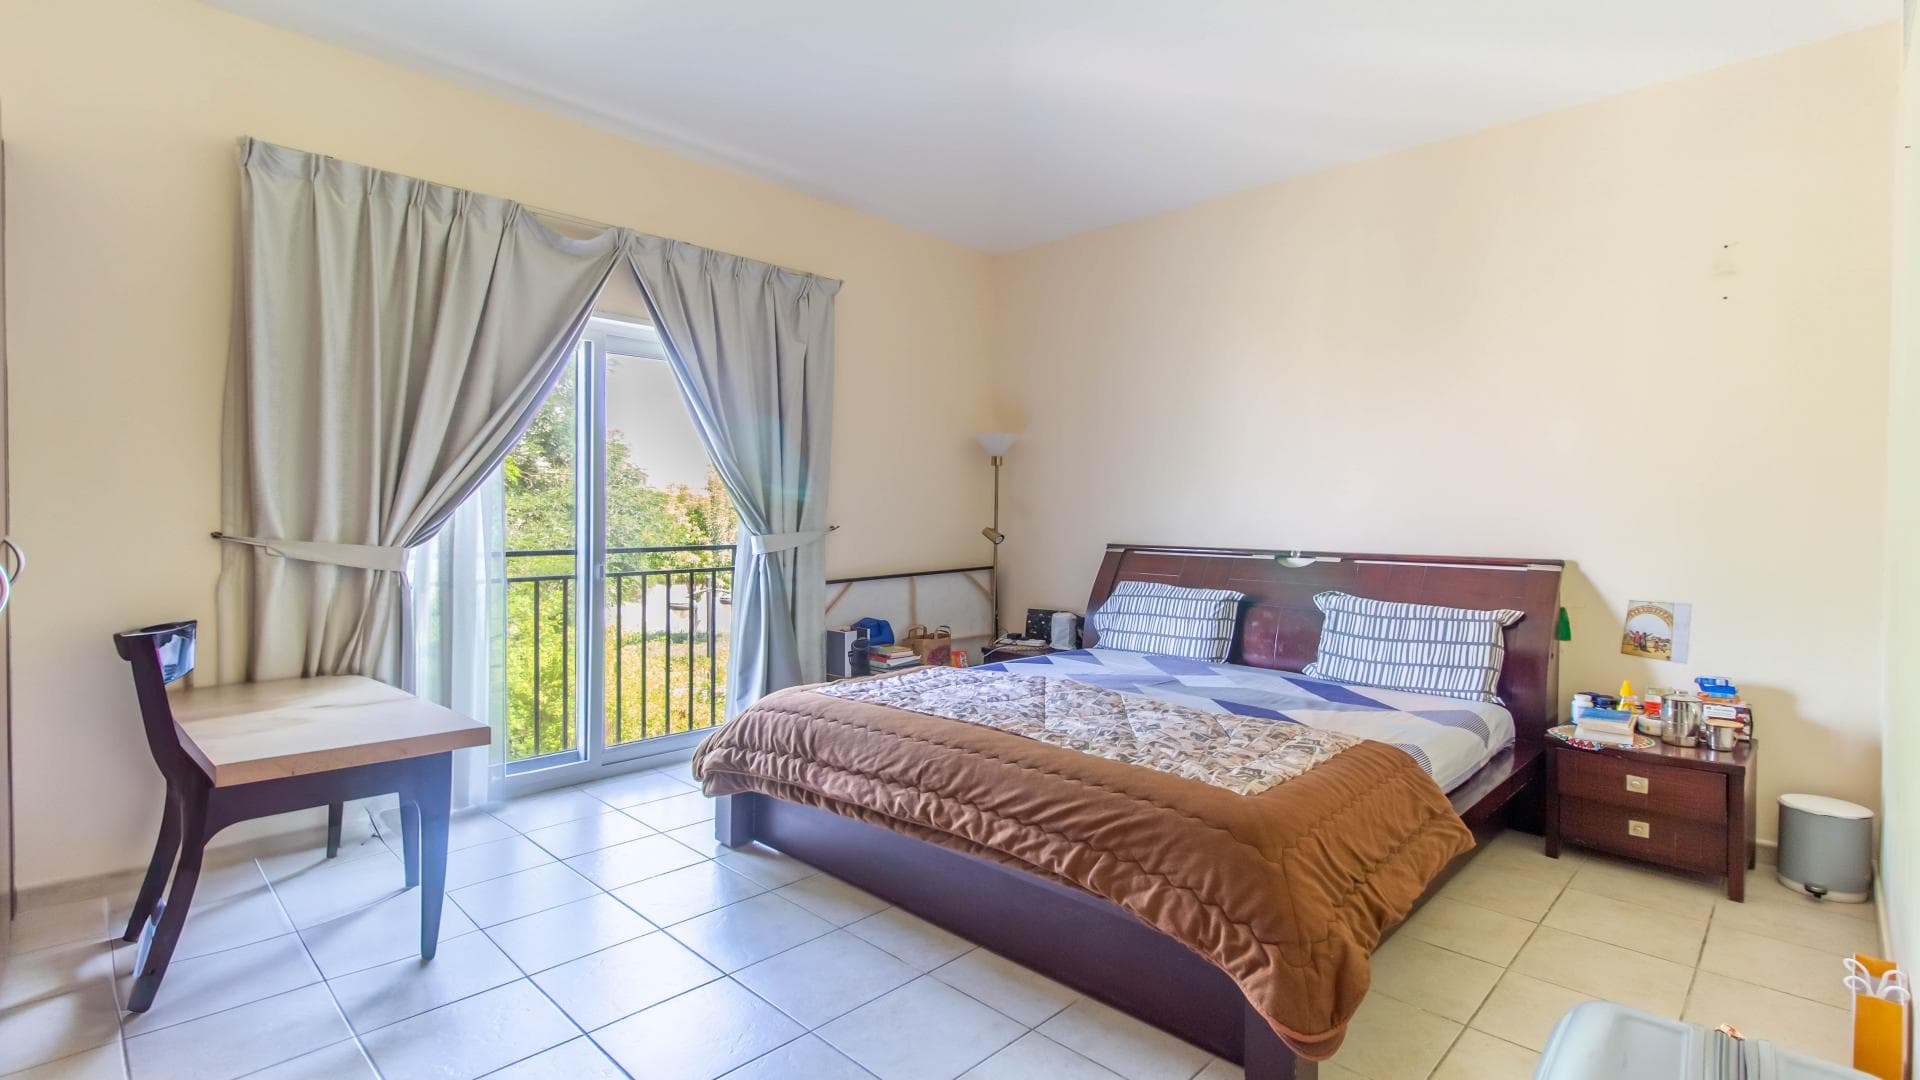 5 Bedroom Villa For Rent Al Thamam 36 Lp37870 18133242a894b40.jpg